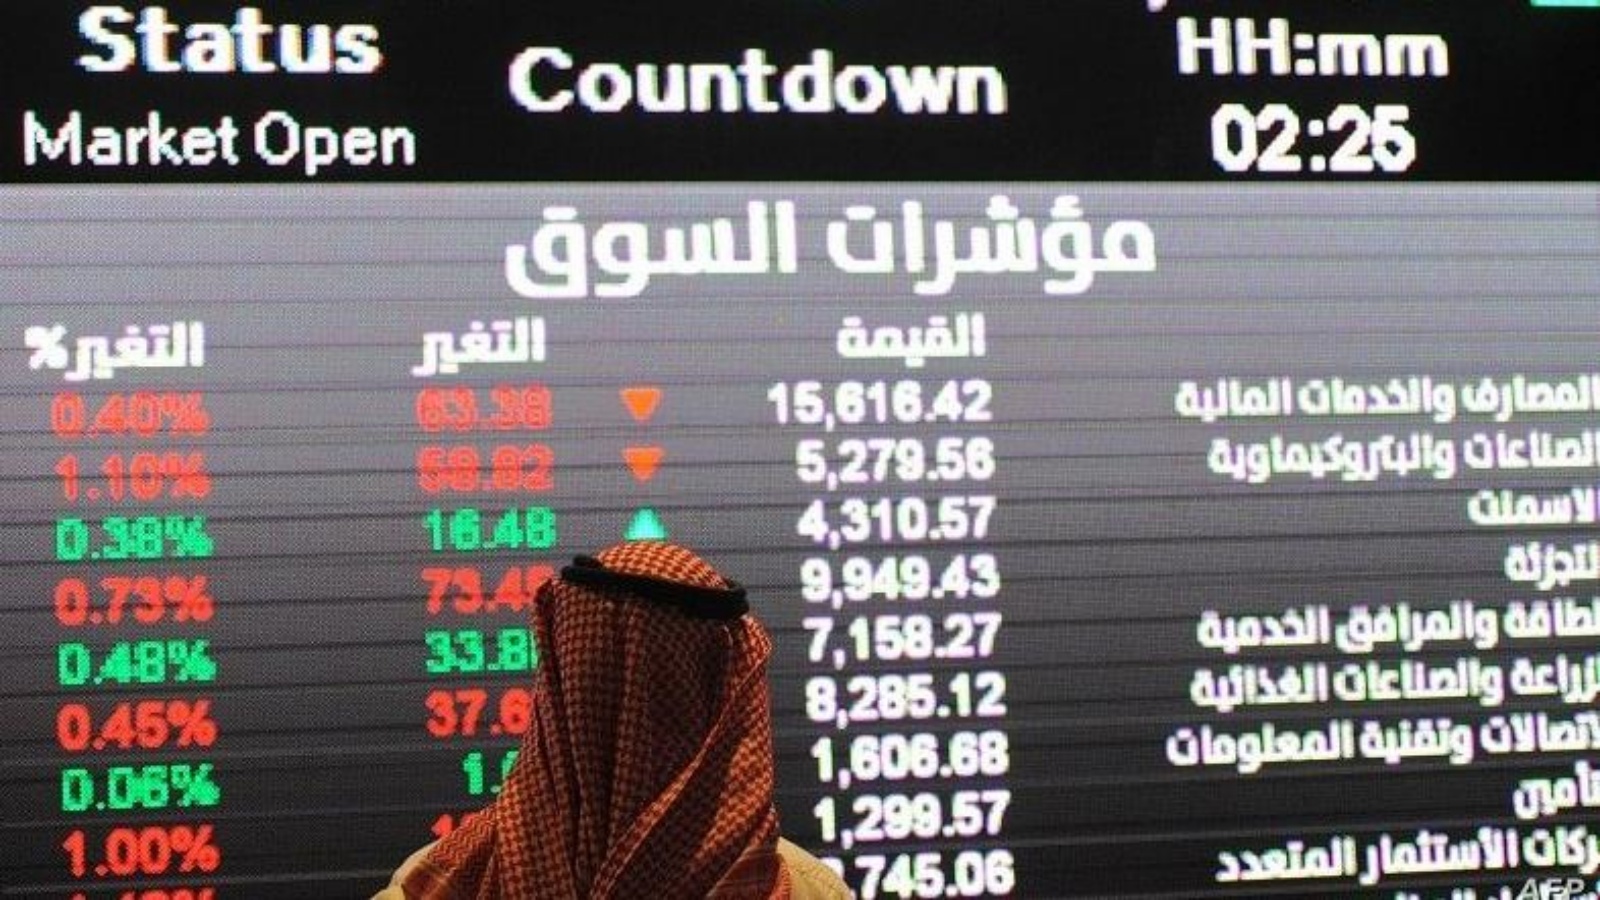 نزول كبير في سوق الأسهم السعودي